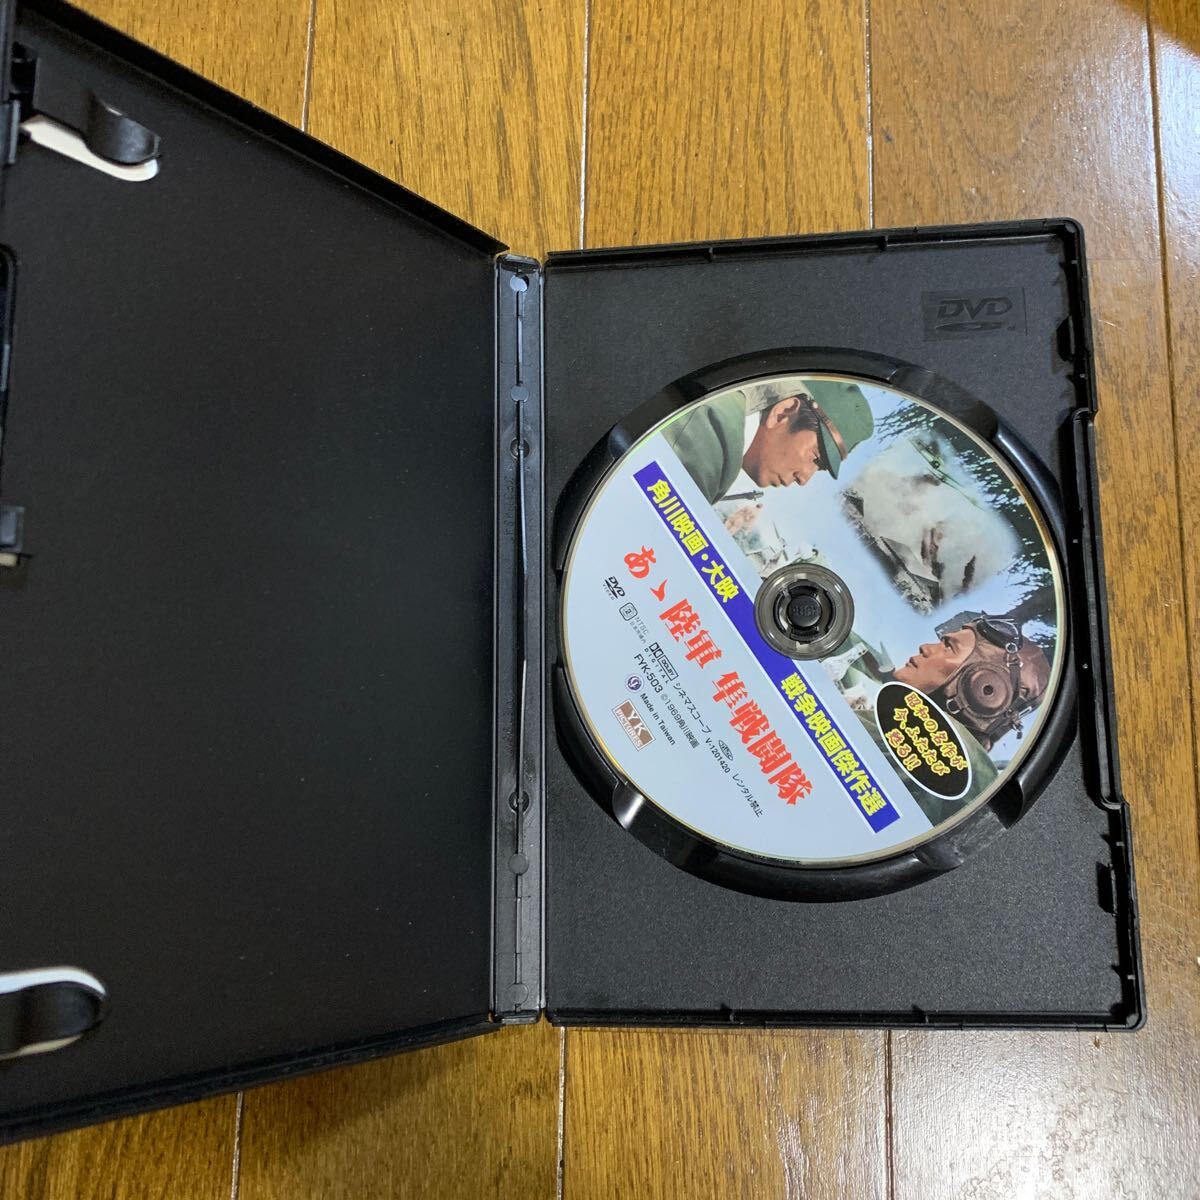 セル版DVD あゝ陸軍隼戦闘隊